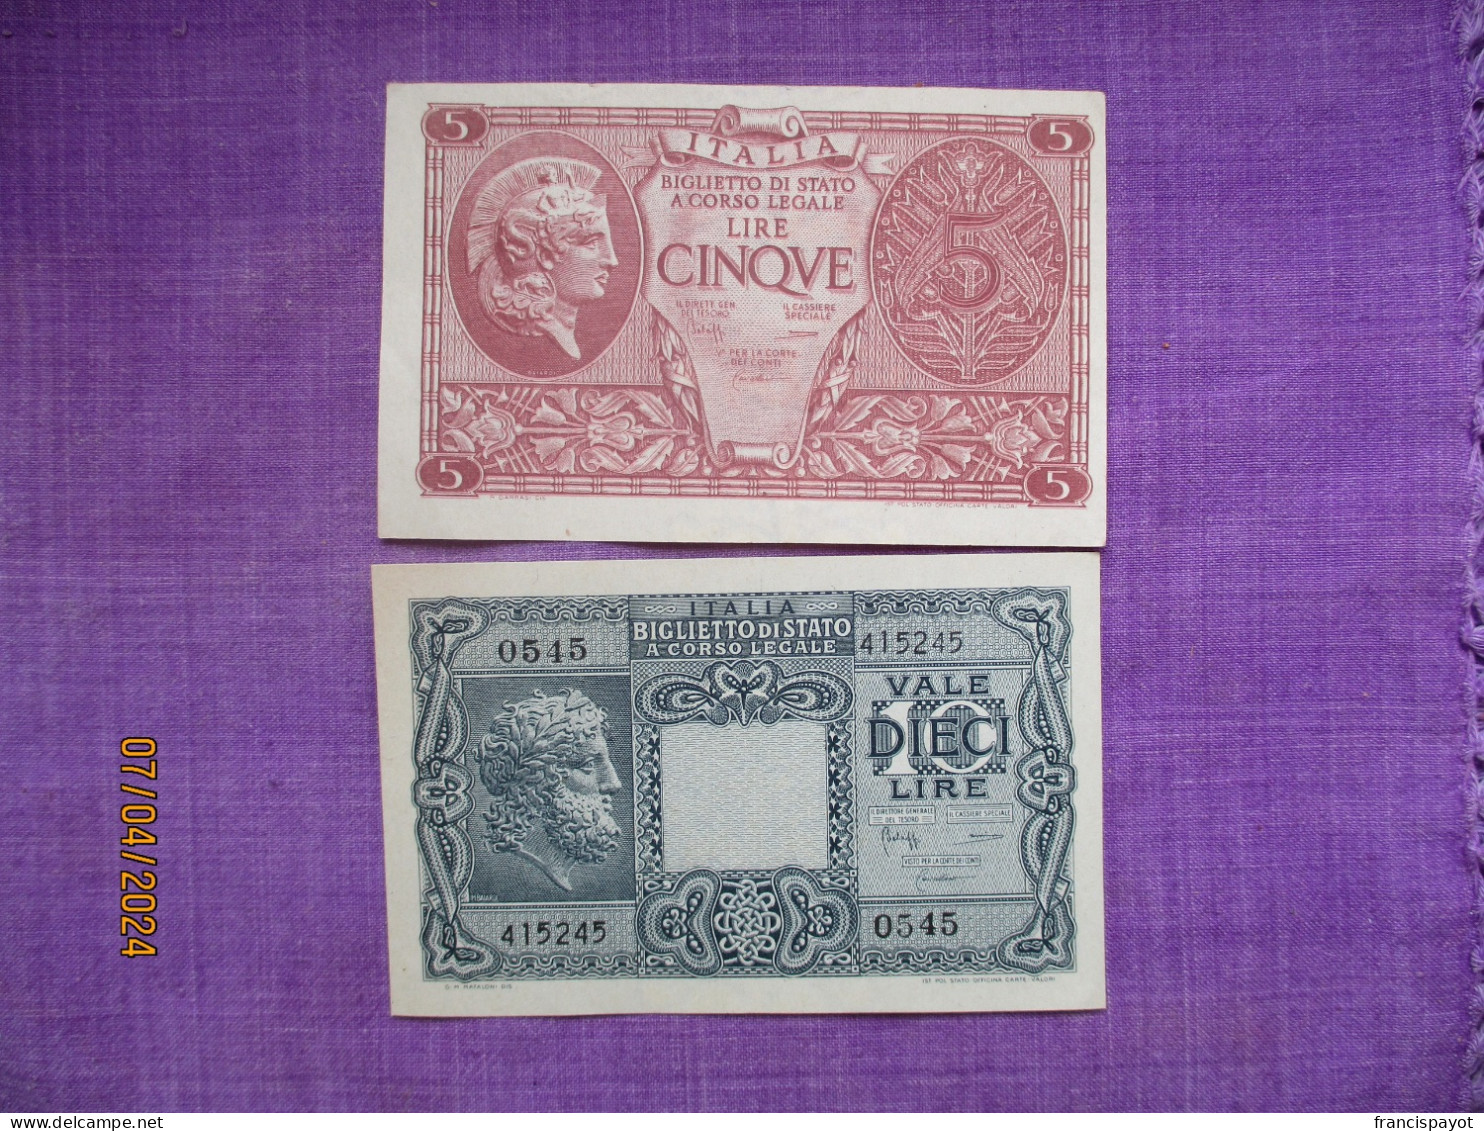 Italia Biglietti Di Stato 5 & 10 Lire 1944 - Italia – Collections